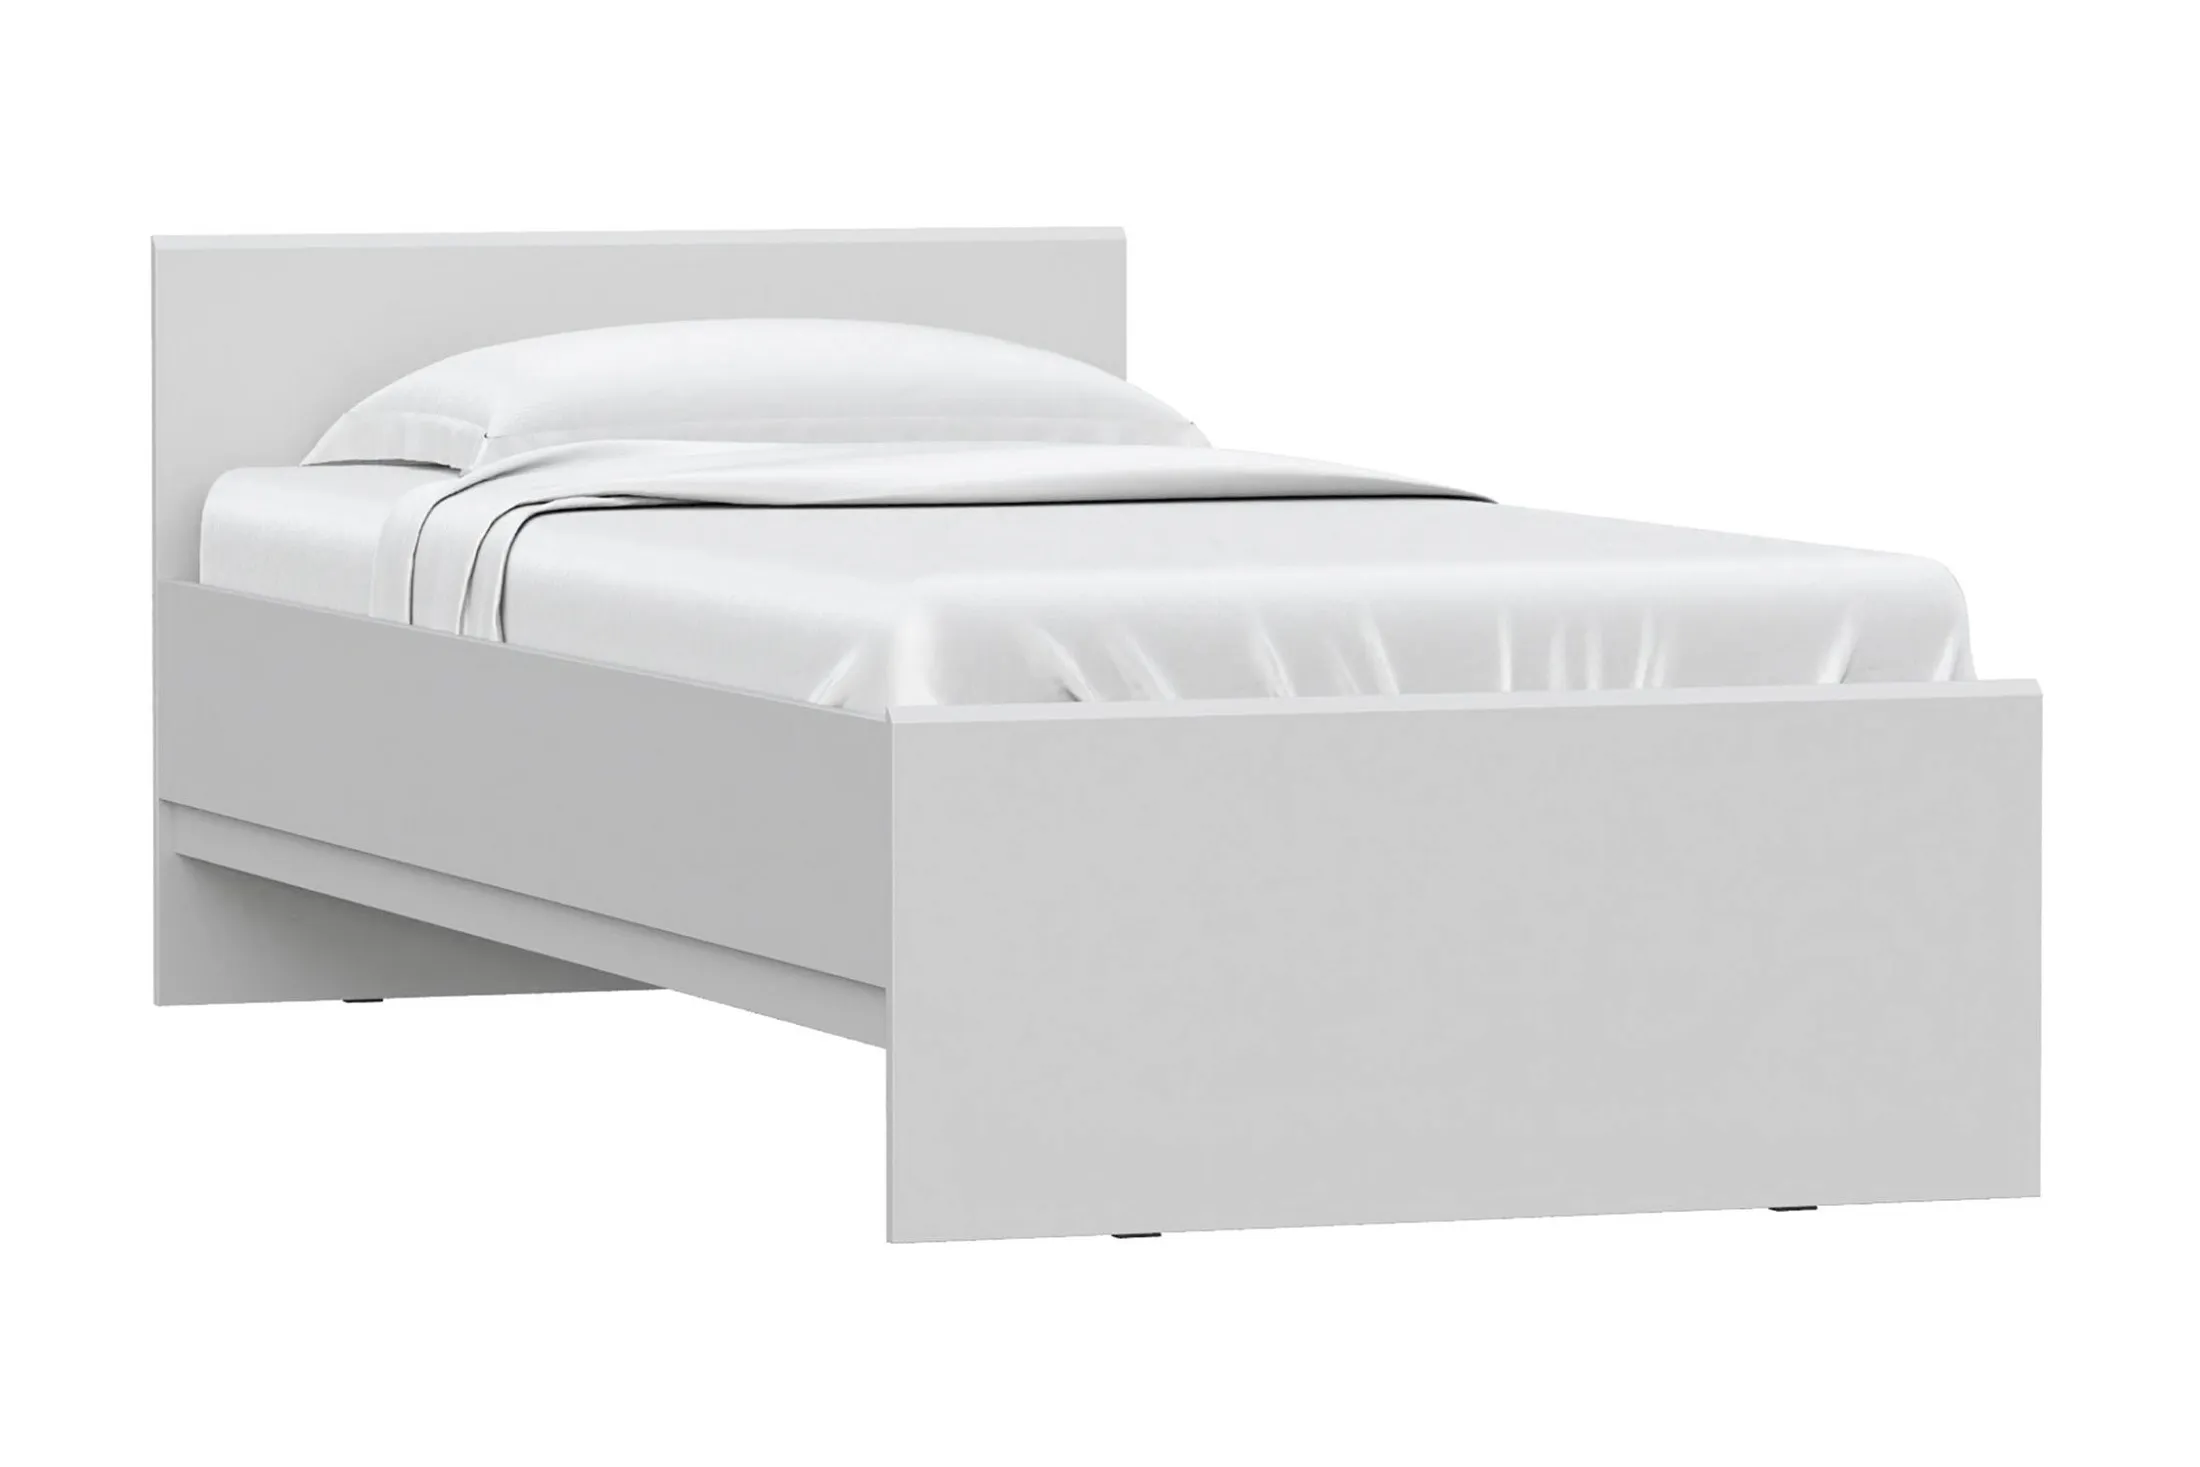 Кровать Stern белая